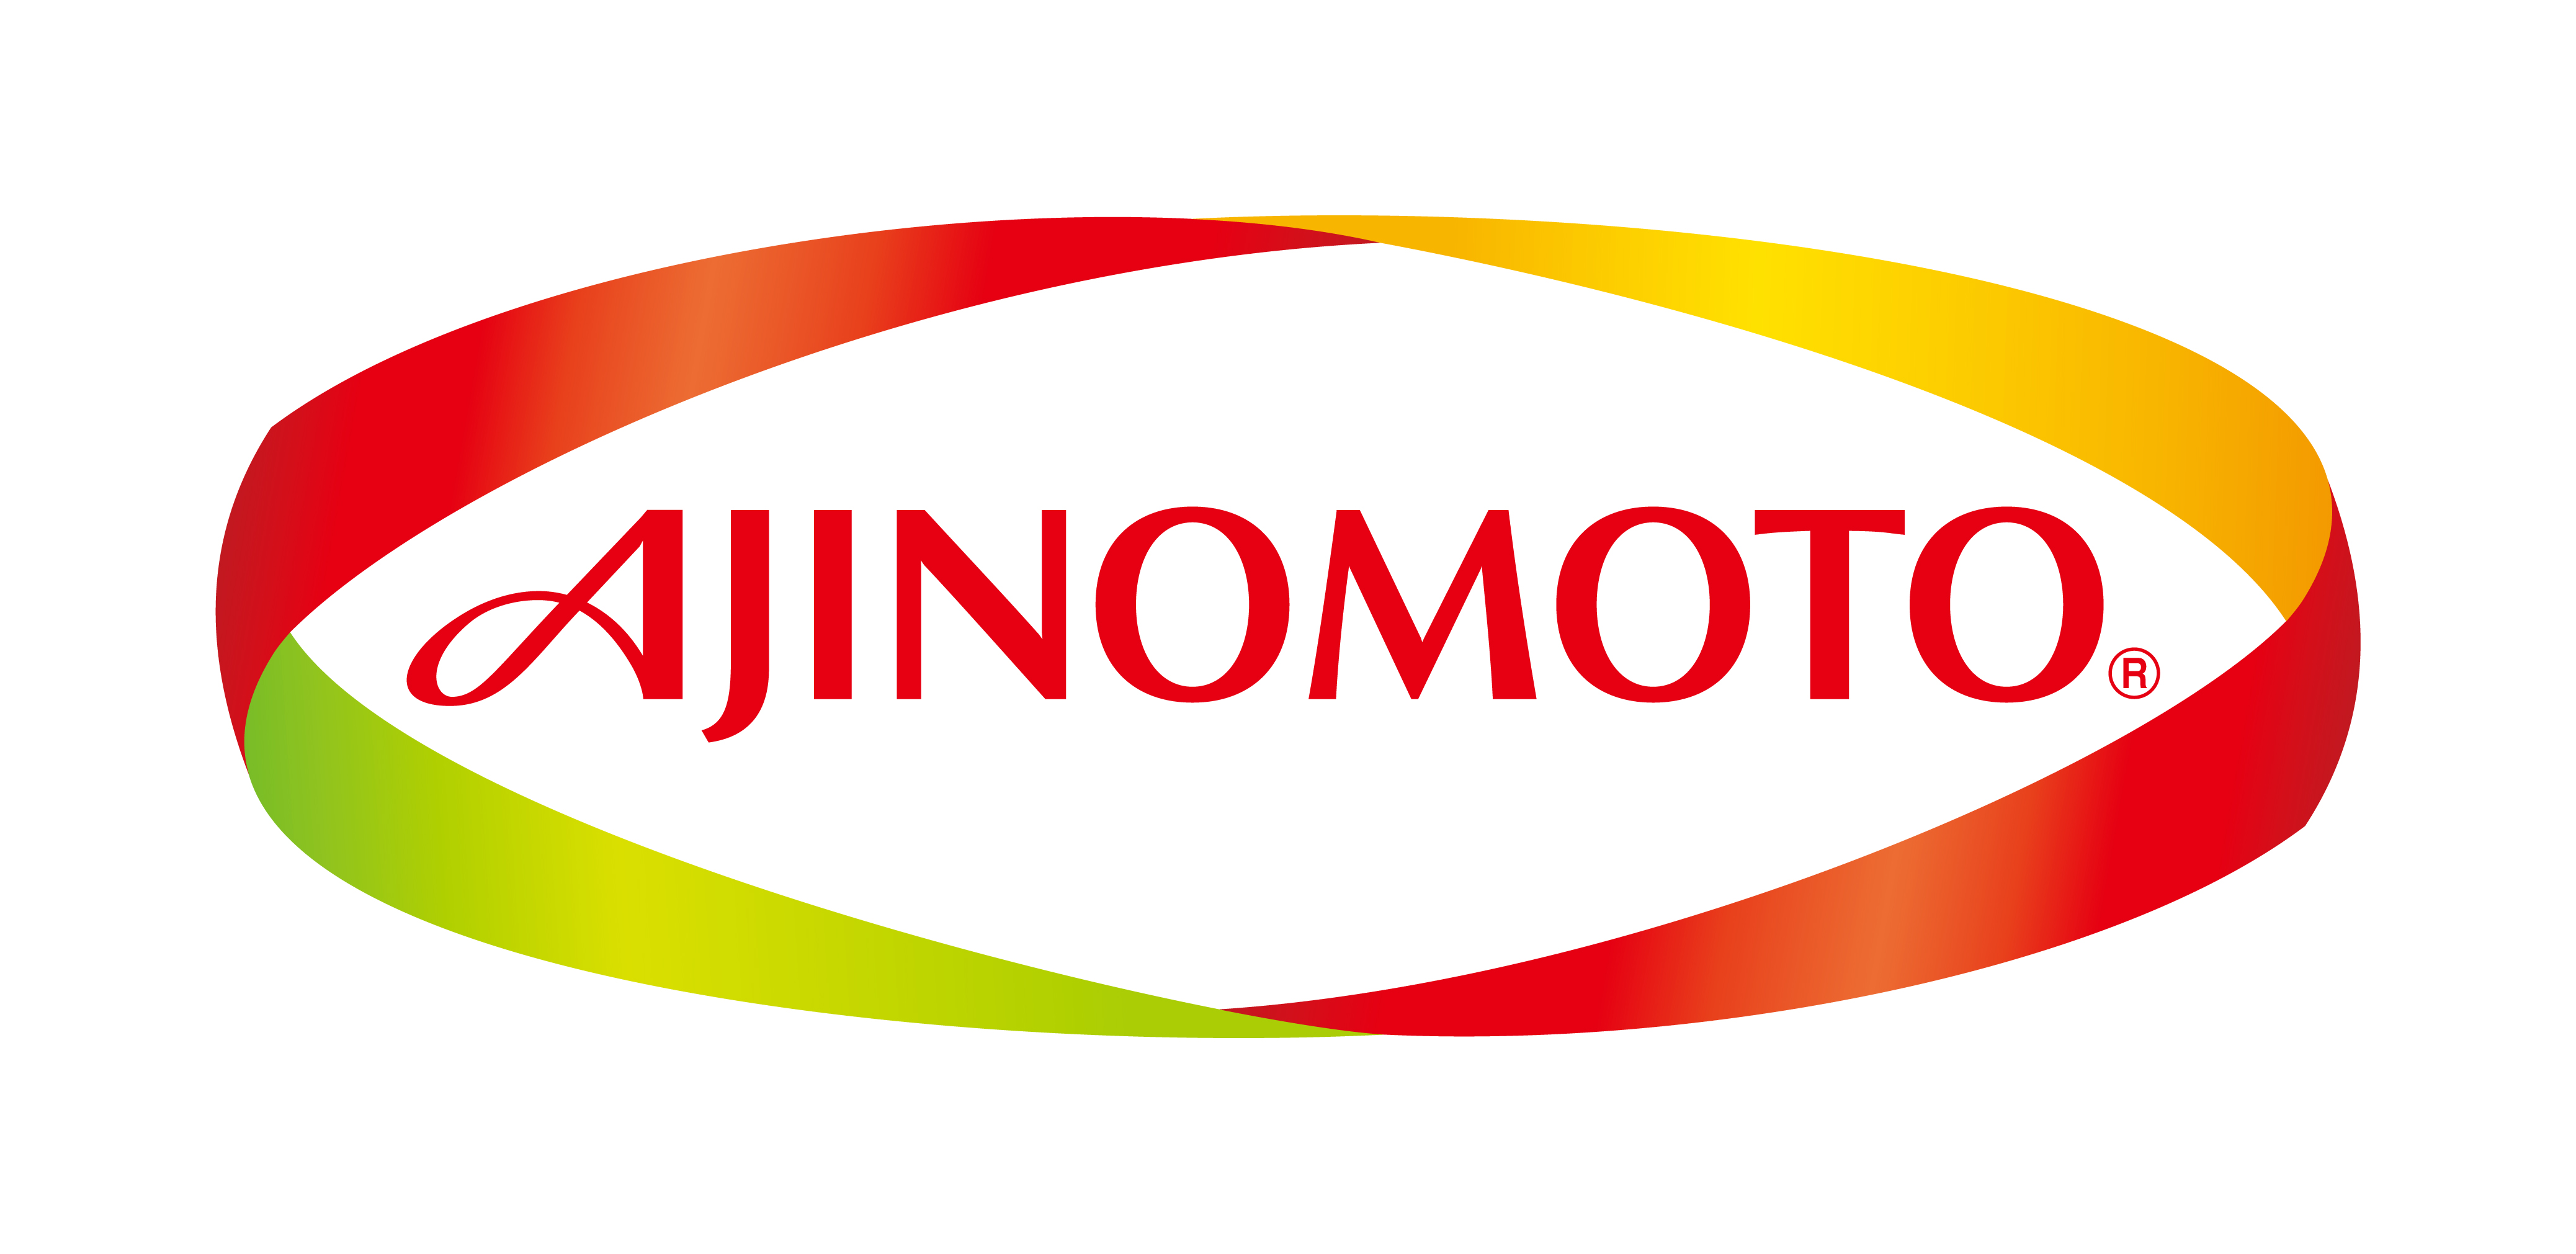 Ajinomoto Logo Vector